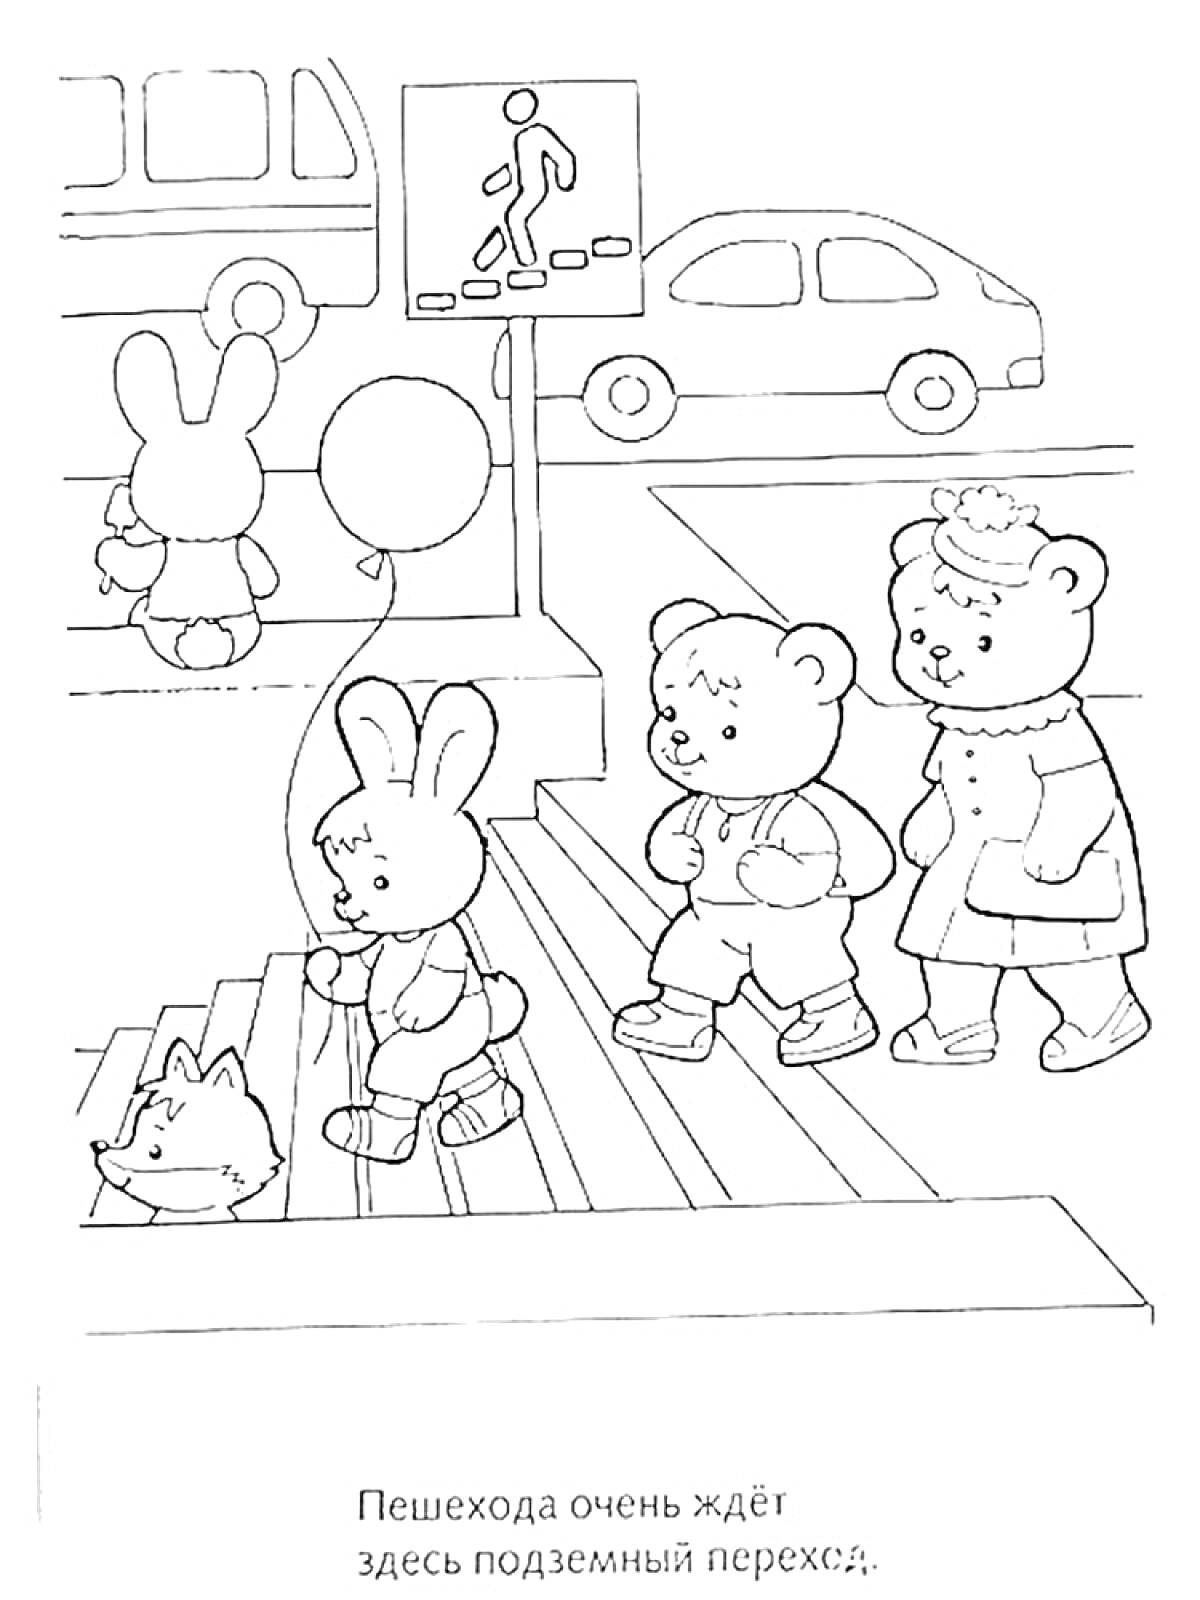 Подземный переход с пешеходами и автомобилями (зайчик, два медвежонка, собачка, два автомобиля, указатель подземного перехода)